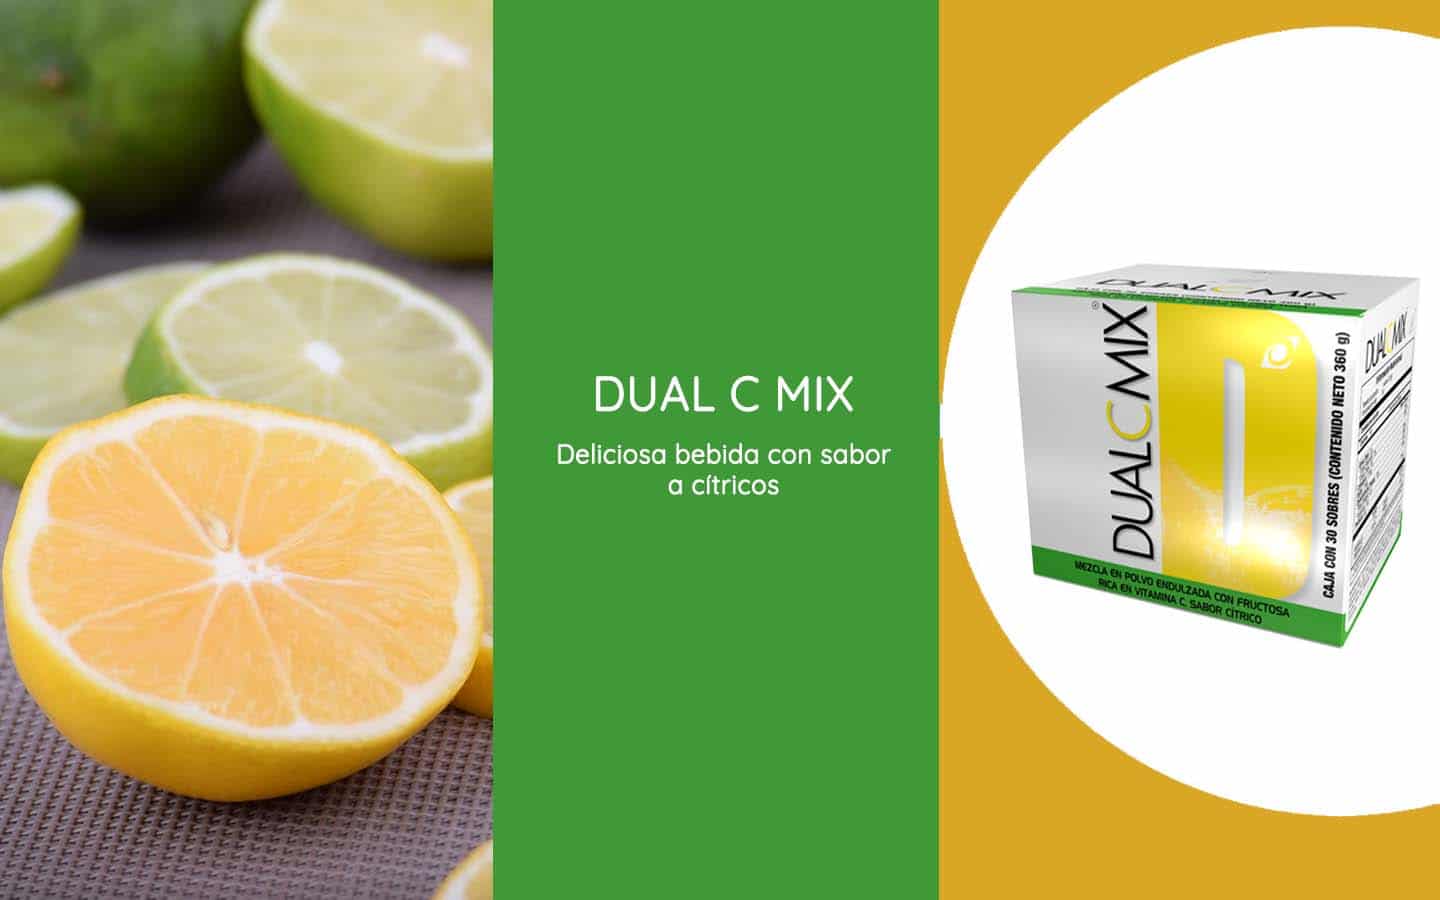 Dual C Mix es un producto de Omnilife rico en vitamina C